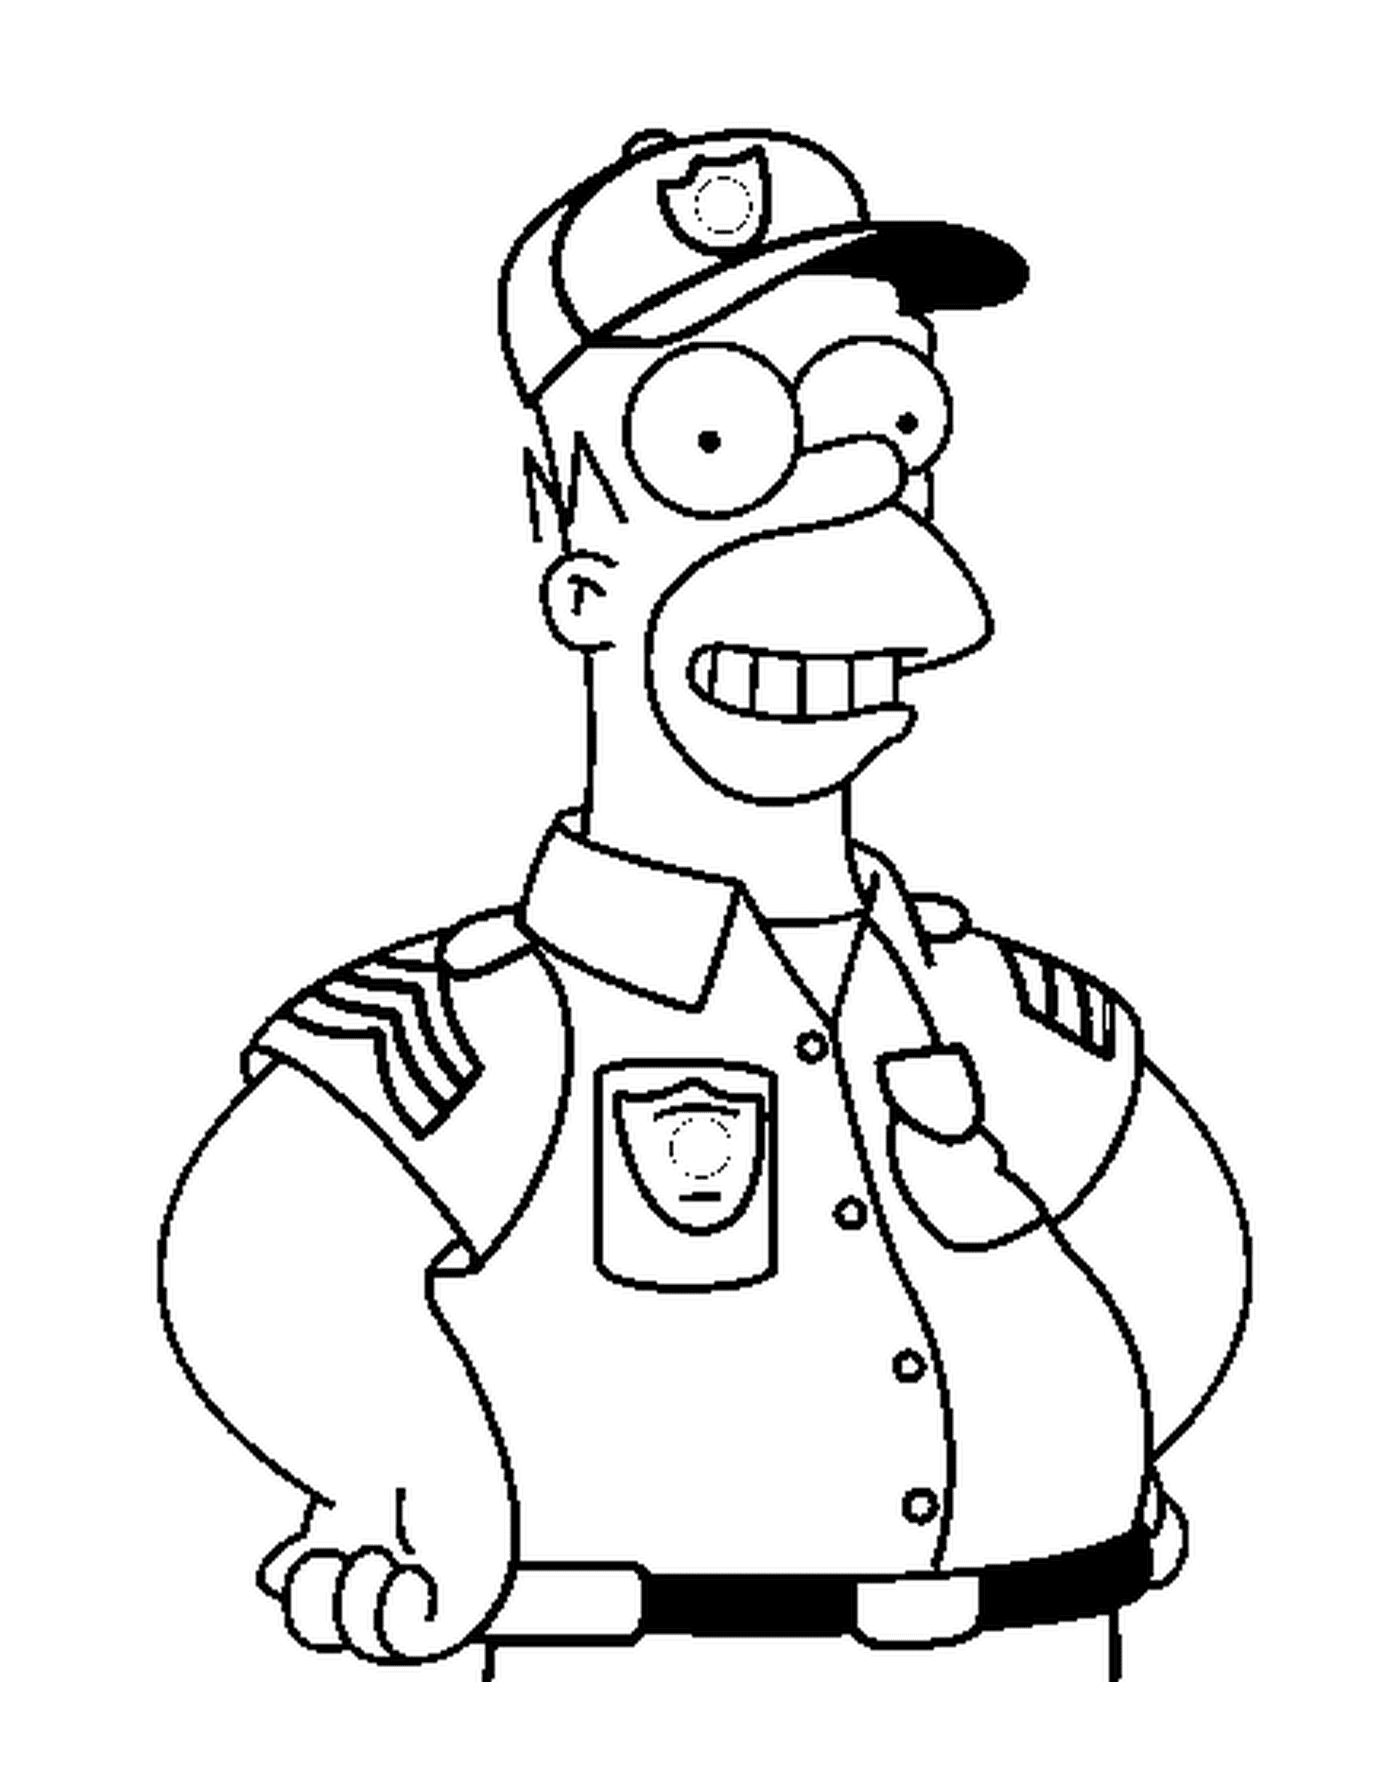  Homer come un poliziotto coraggioso 